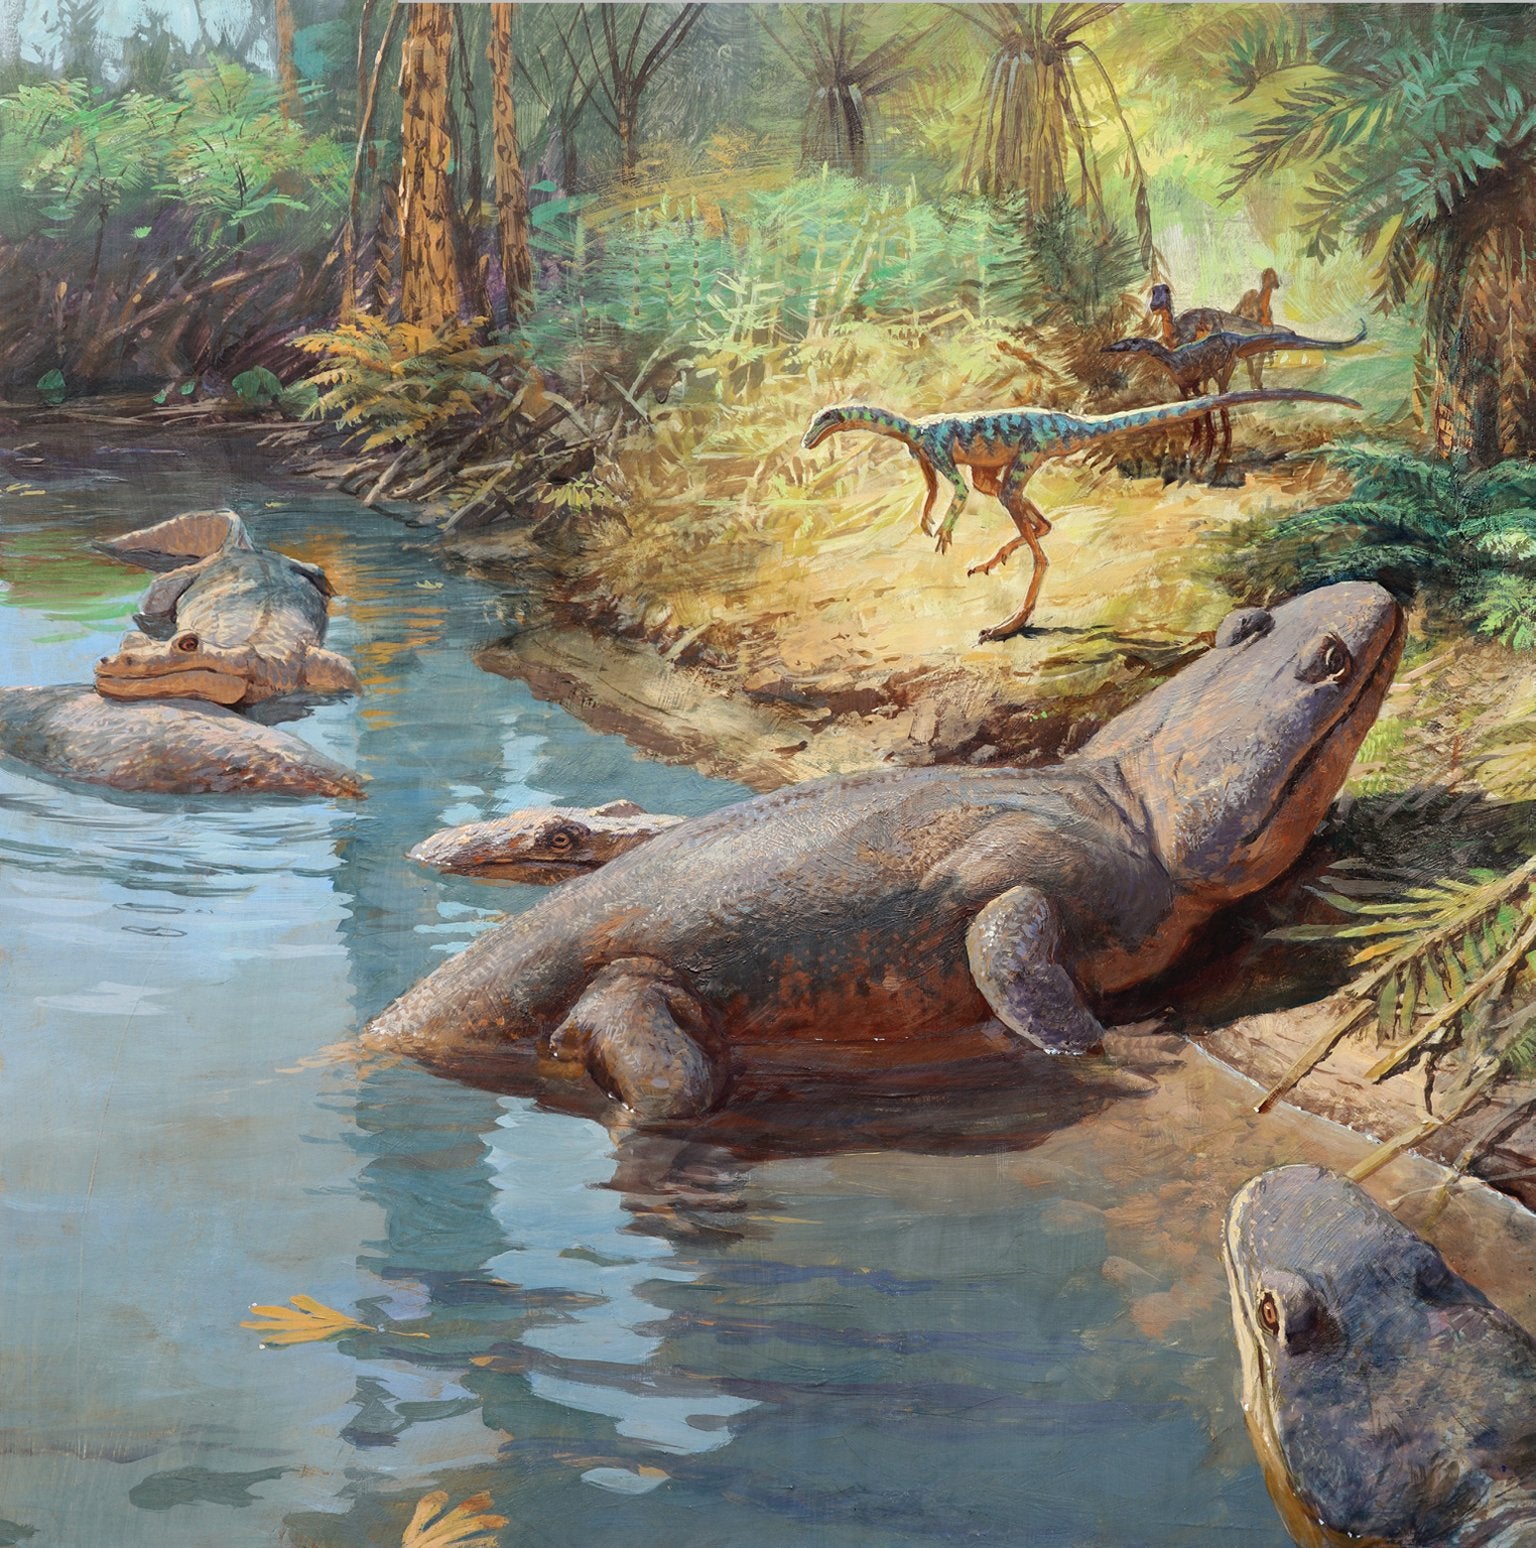 Мезозойская эра триас. Триасовый период мезозойской эры. Фауна Триасового периода. Динозавры Триасового периода. Триасовый период Триас.